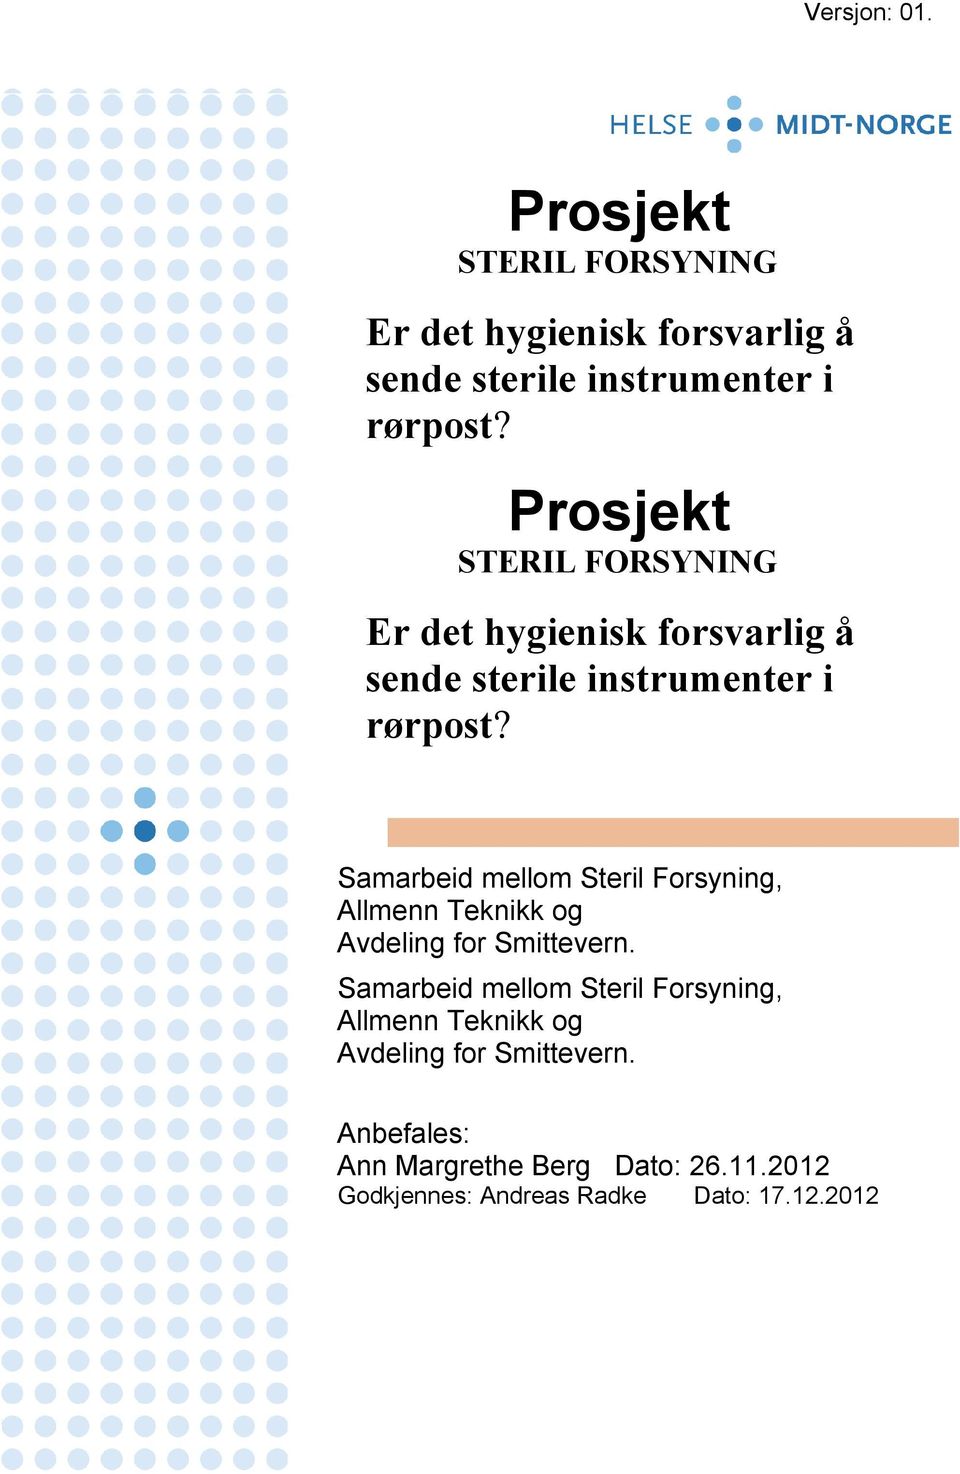 Samarbeid mellom Steril Forsyning, Allmenn Teknikk og Avdeling for Smittevern.